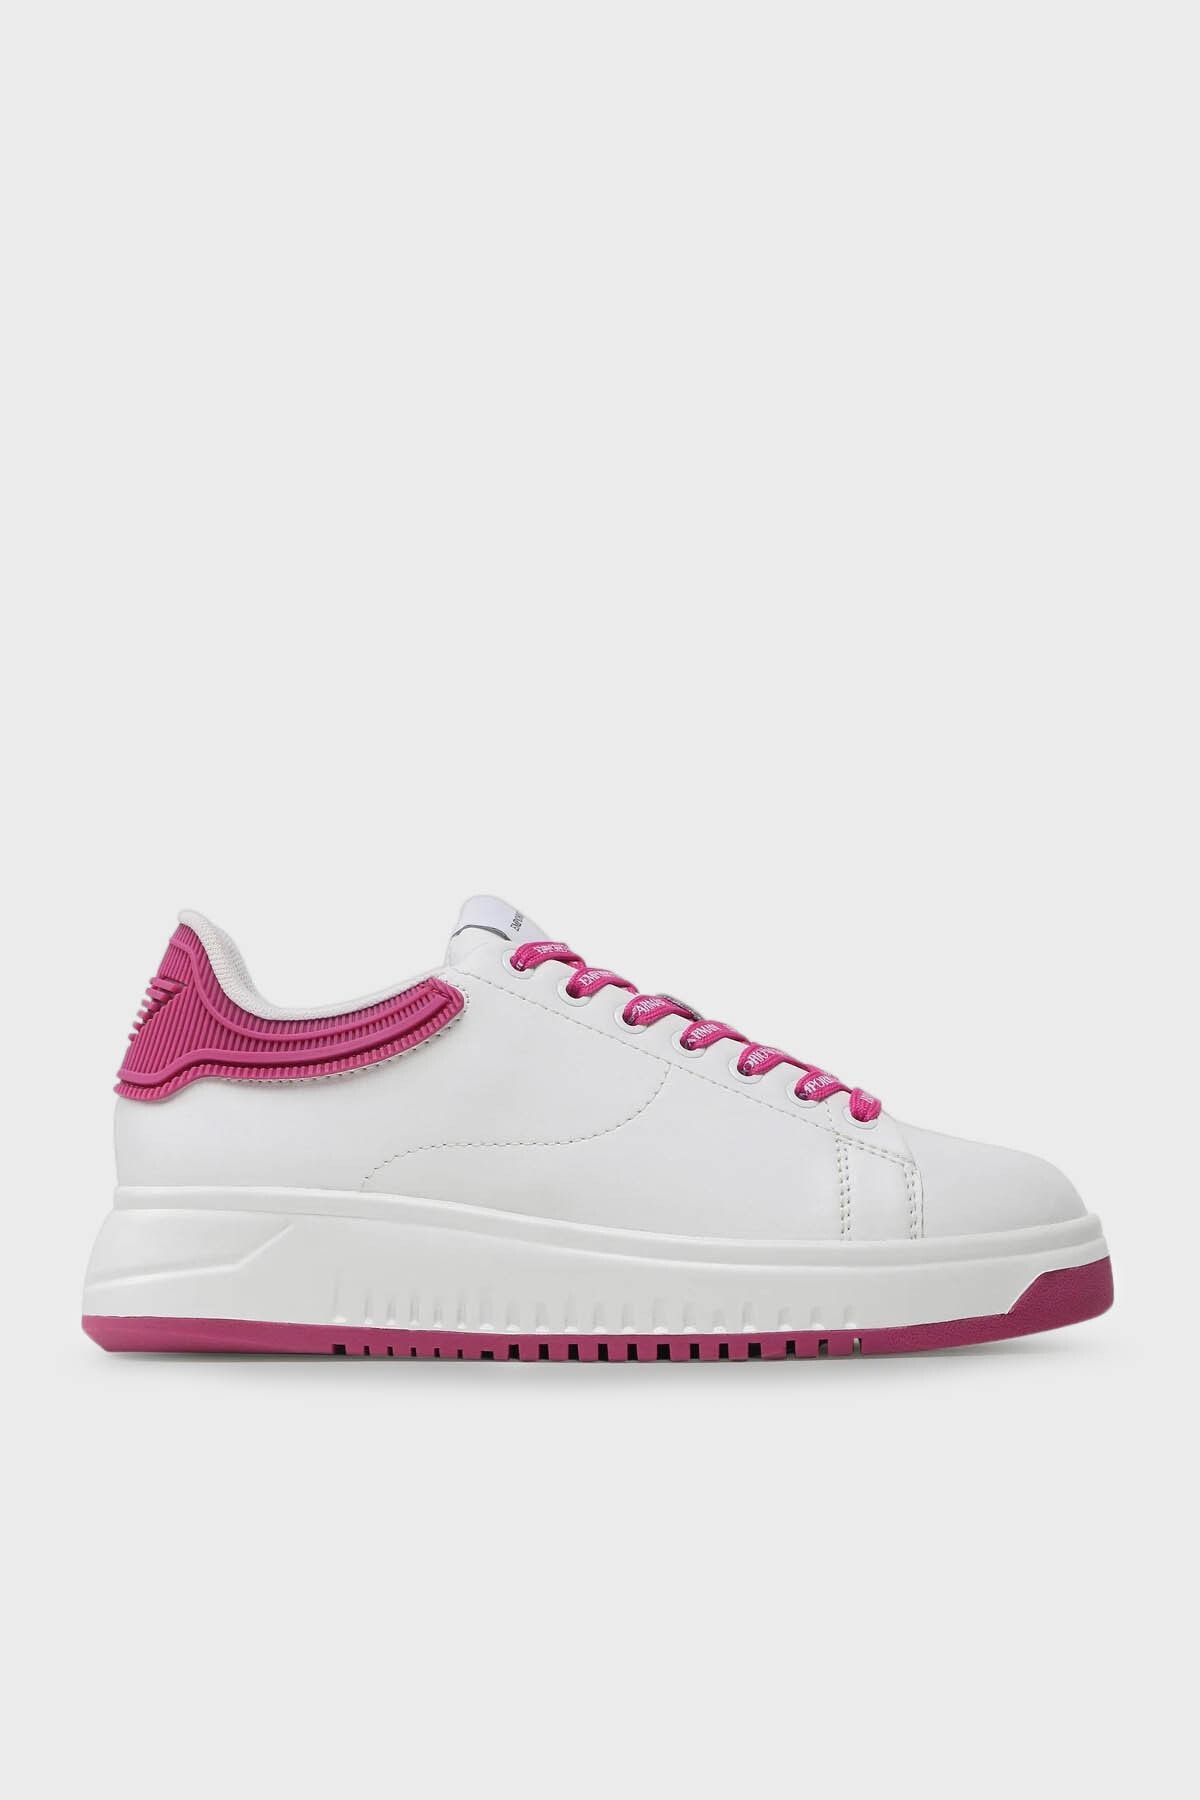 Emporio Armani Logolu Deri Sneaker Ayakkabı Ayakkabı X3x024 Xn825 N862